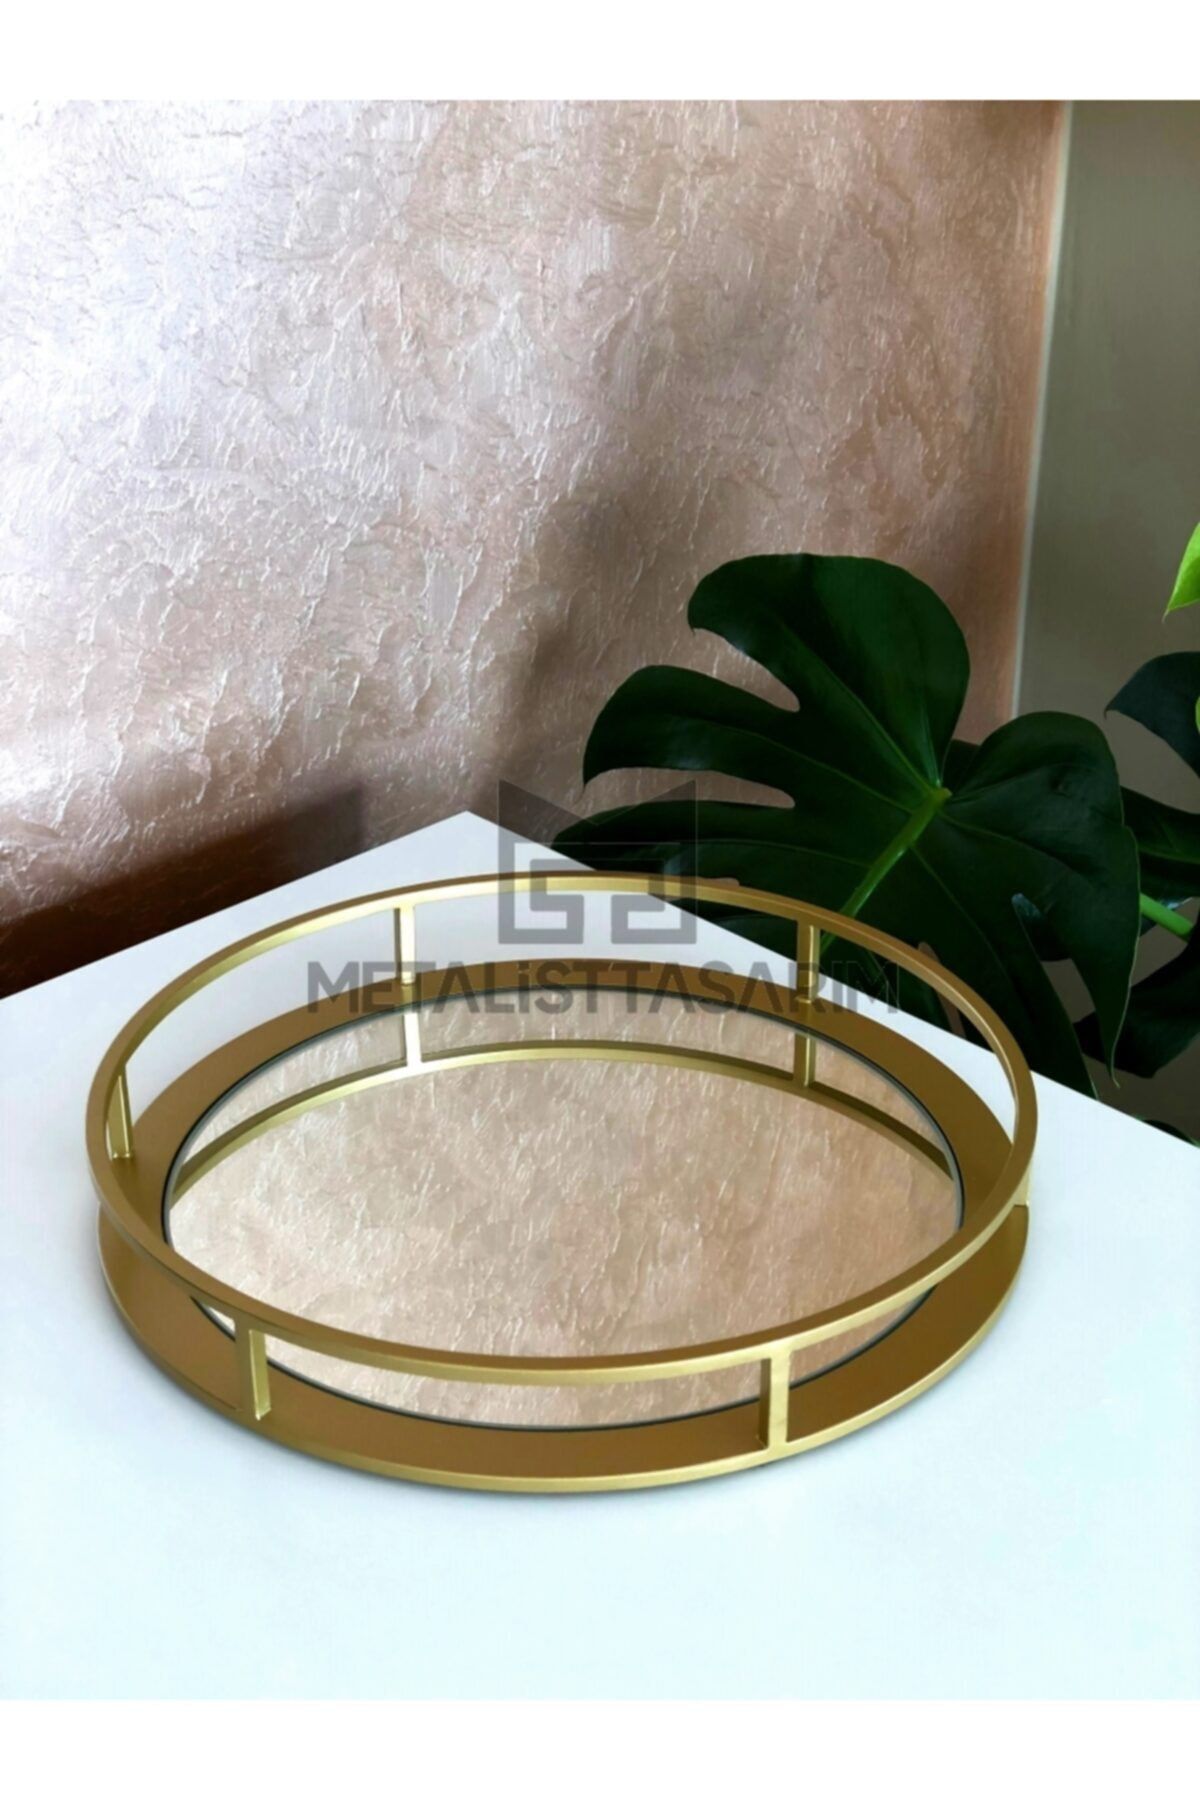 Metalist Tasarım Sefa Dekoratif Aynalı Tepsi Yuvarlak Mat Gold Renk 28cm Altın